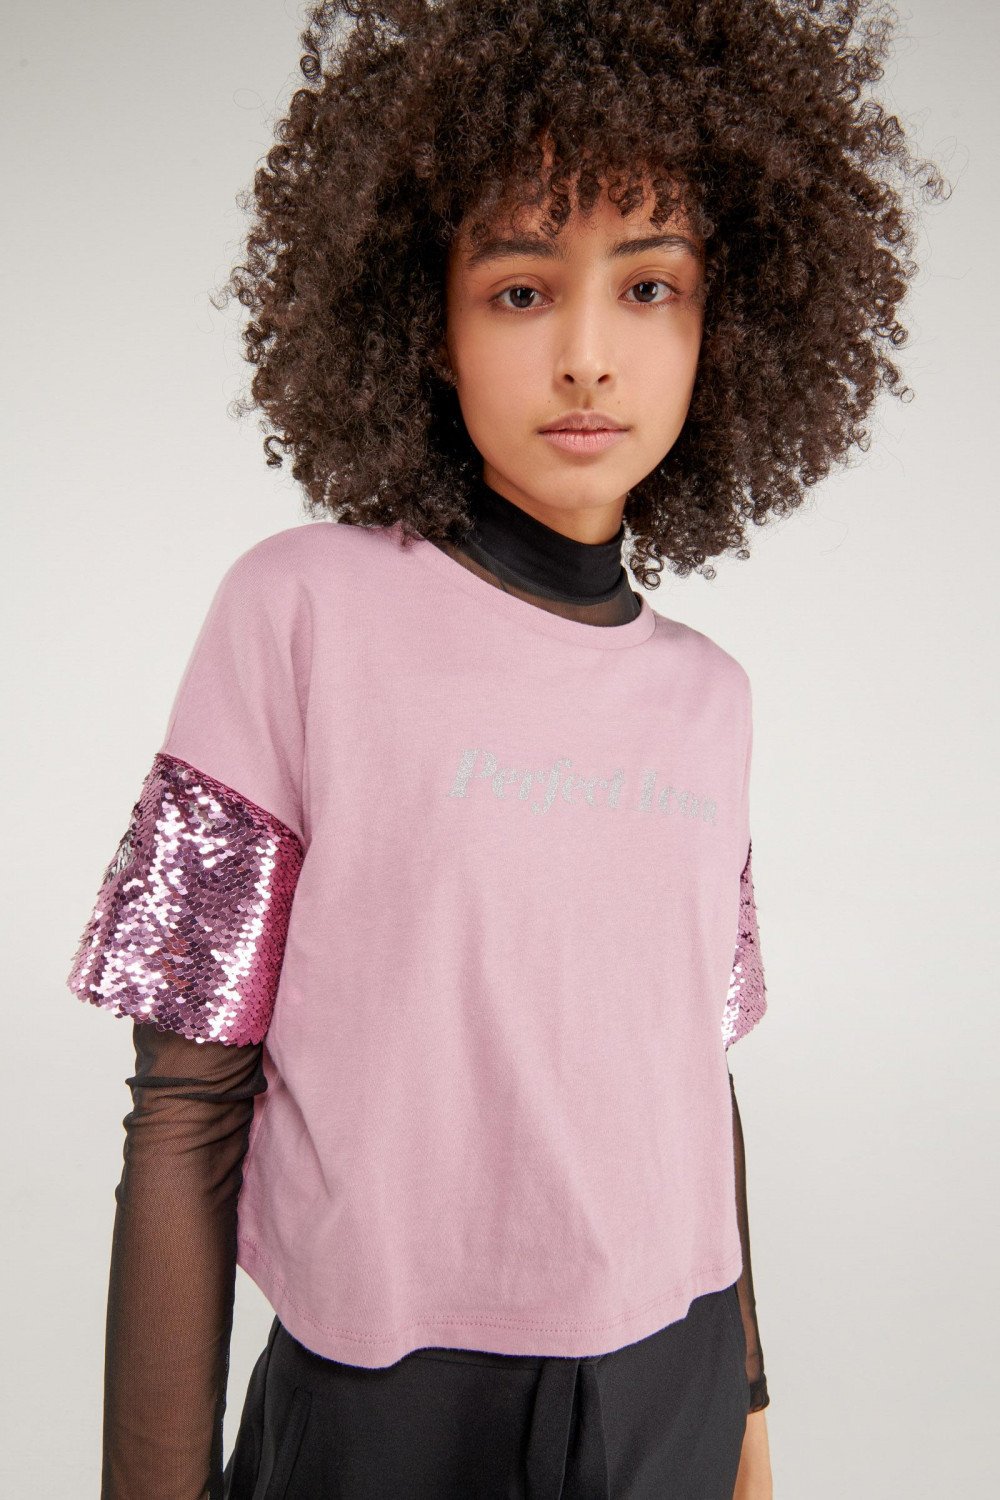 Camiseta cuello redondo lila medio con lentejuelas en las mangas